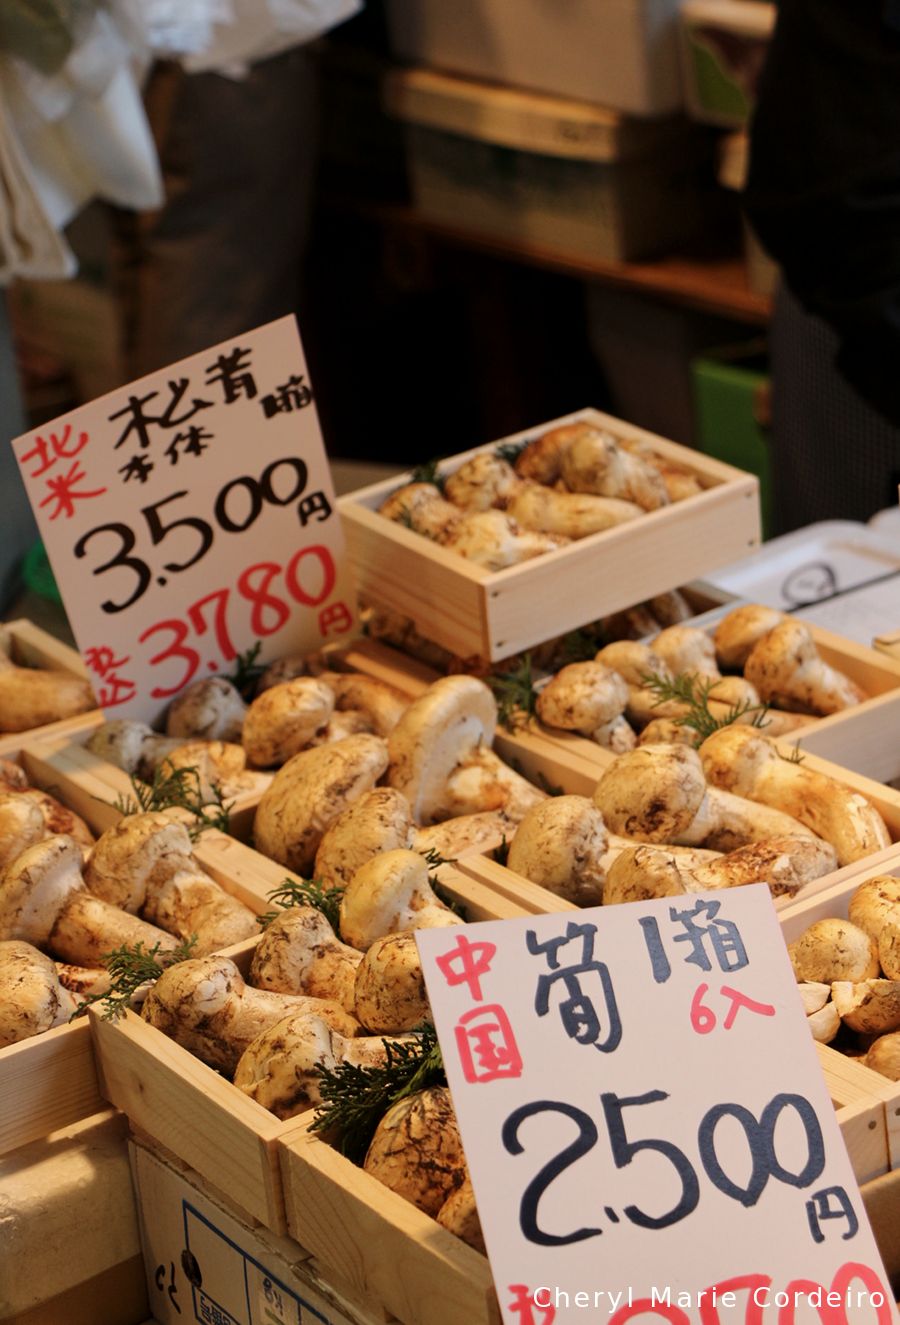 Tsukiji Market (築地市場, Tsukiji Shijō)